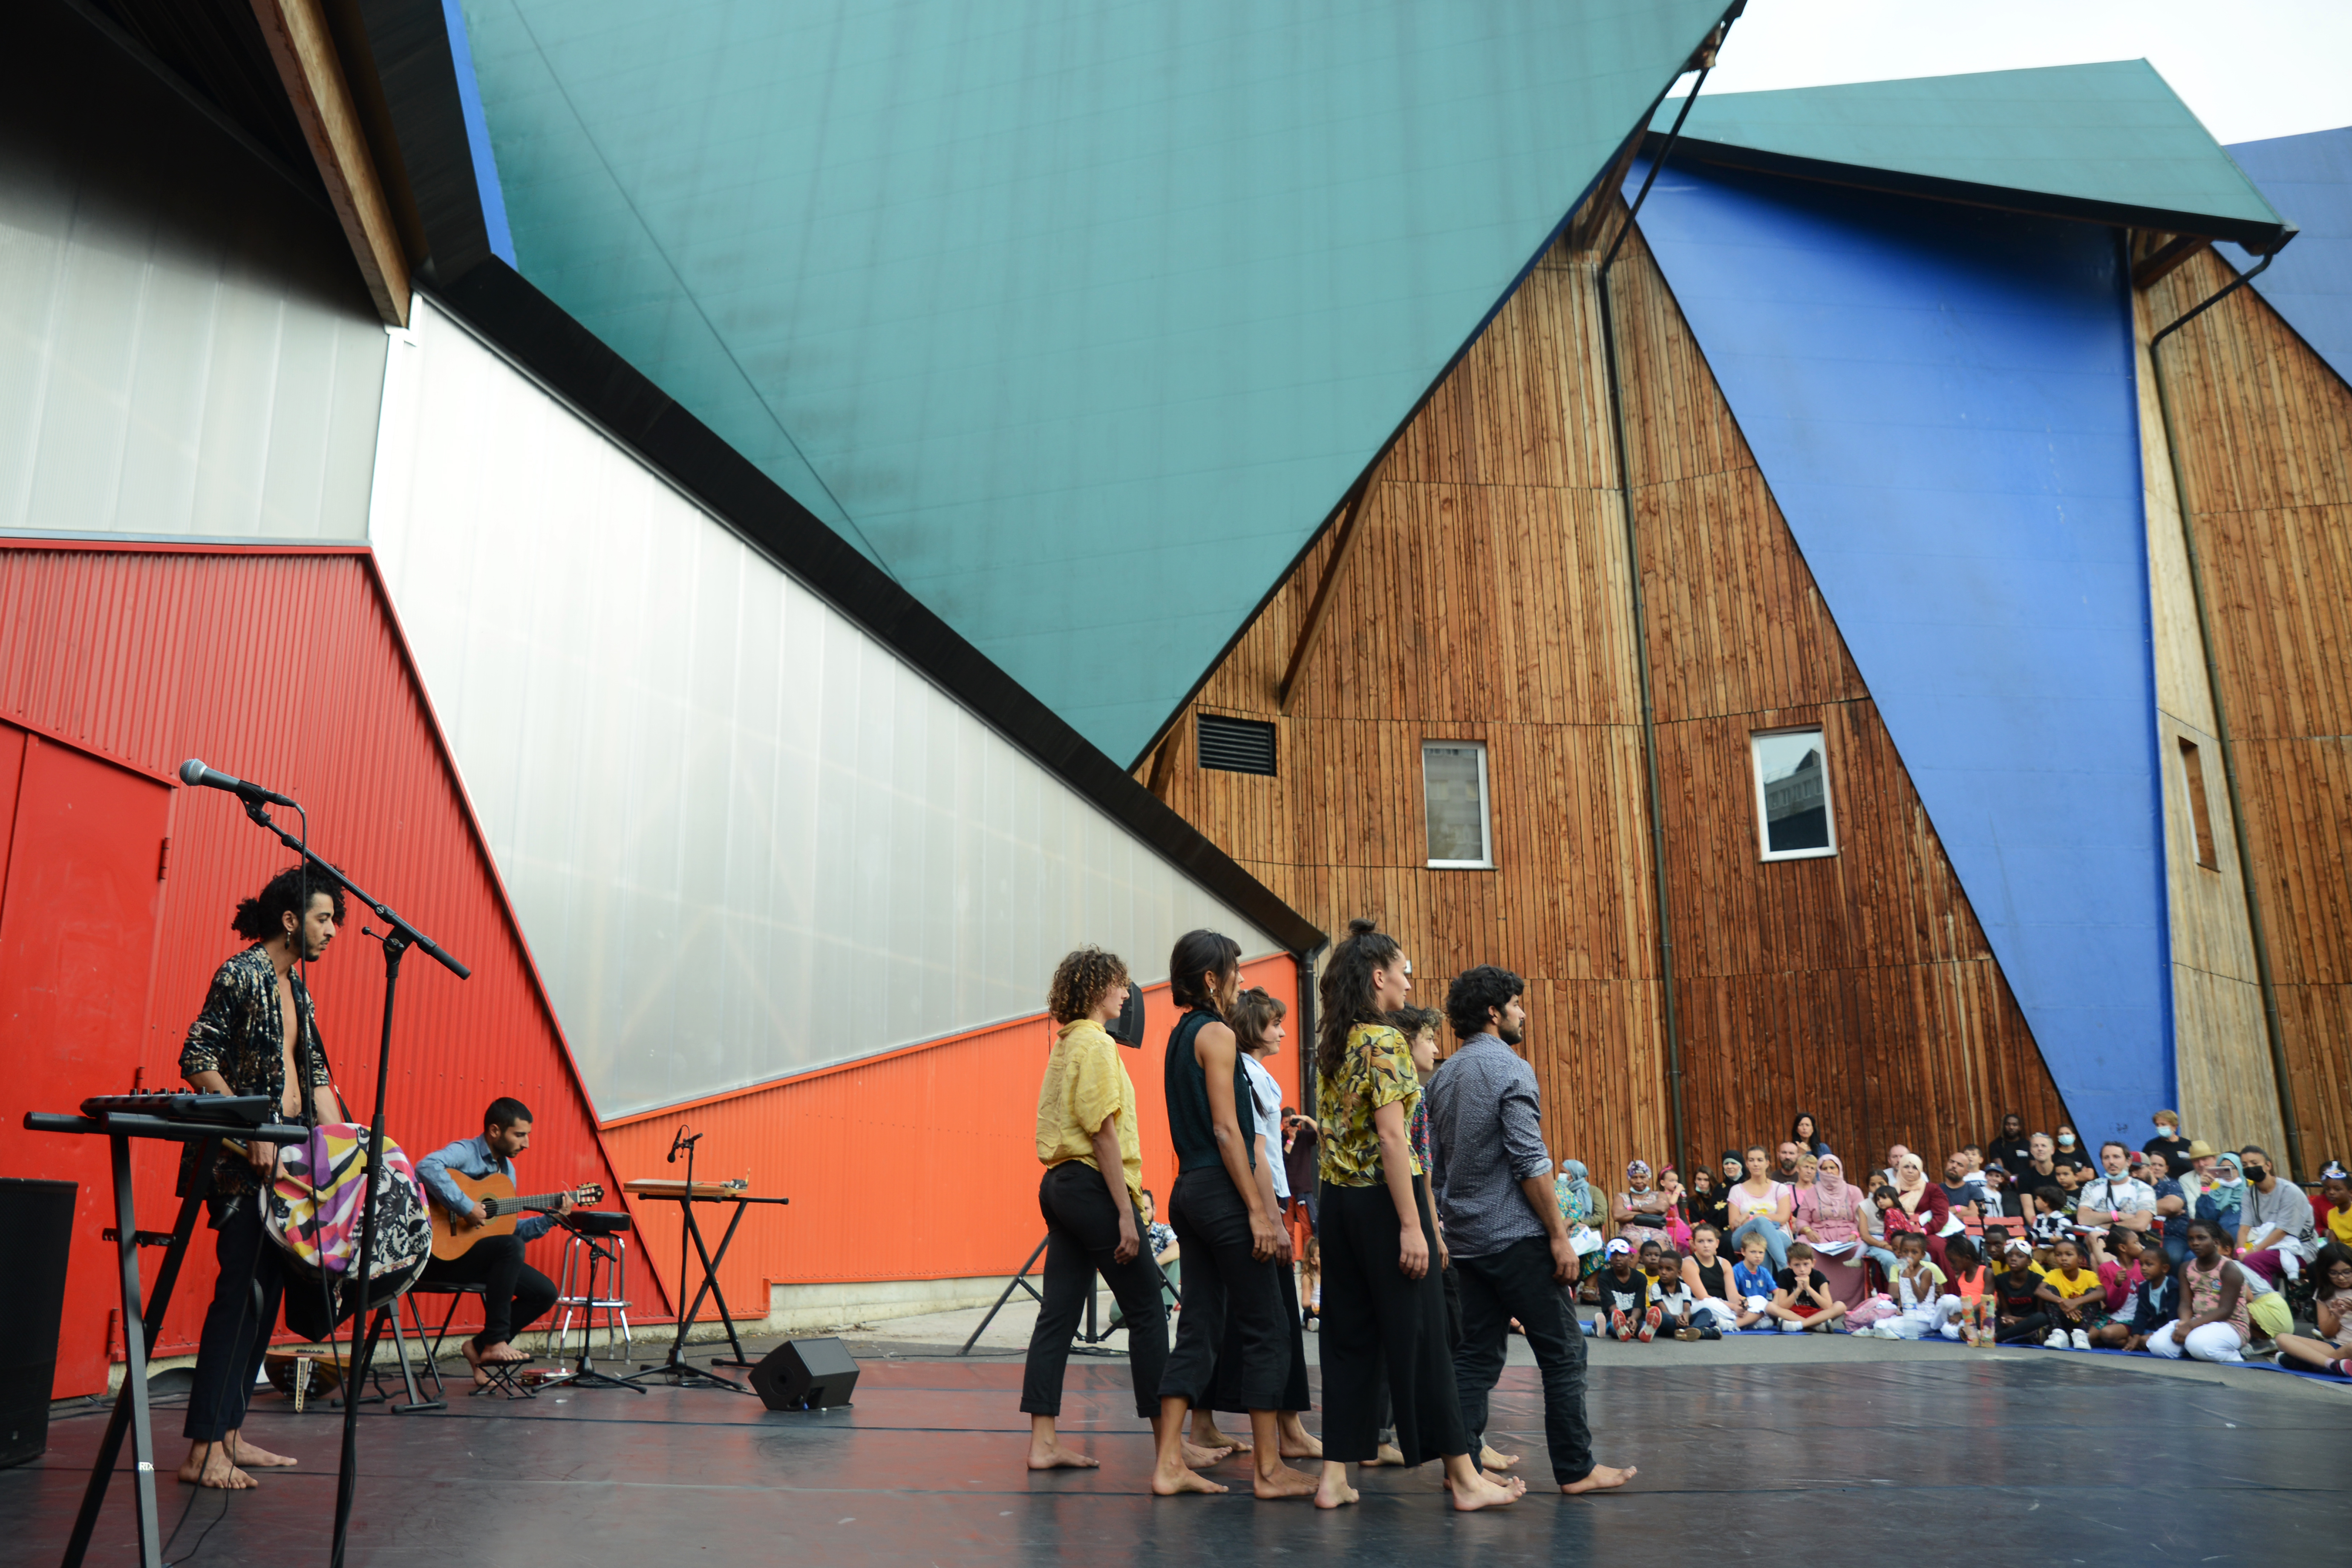 The Plus Petit Cirque du Monde is awarded the "Centre culturel de rencontre" label